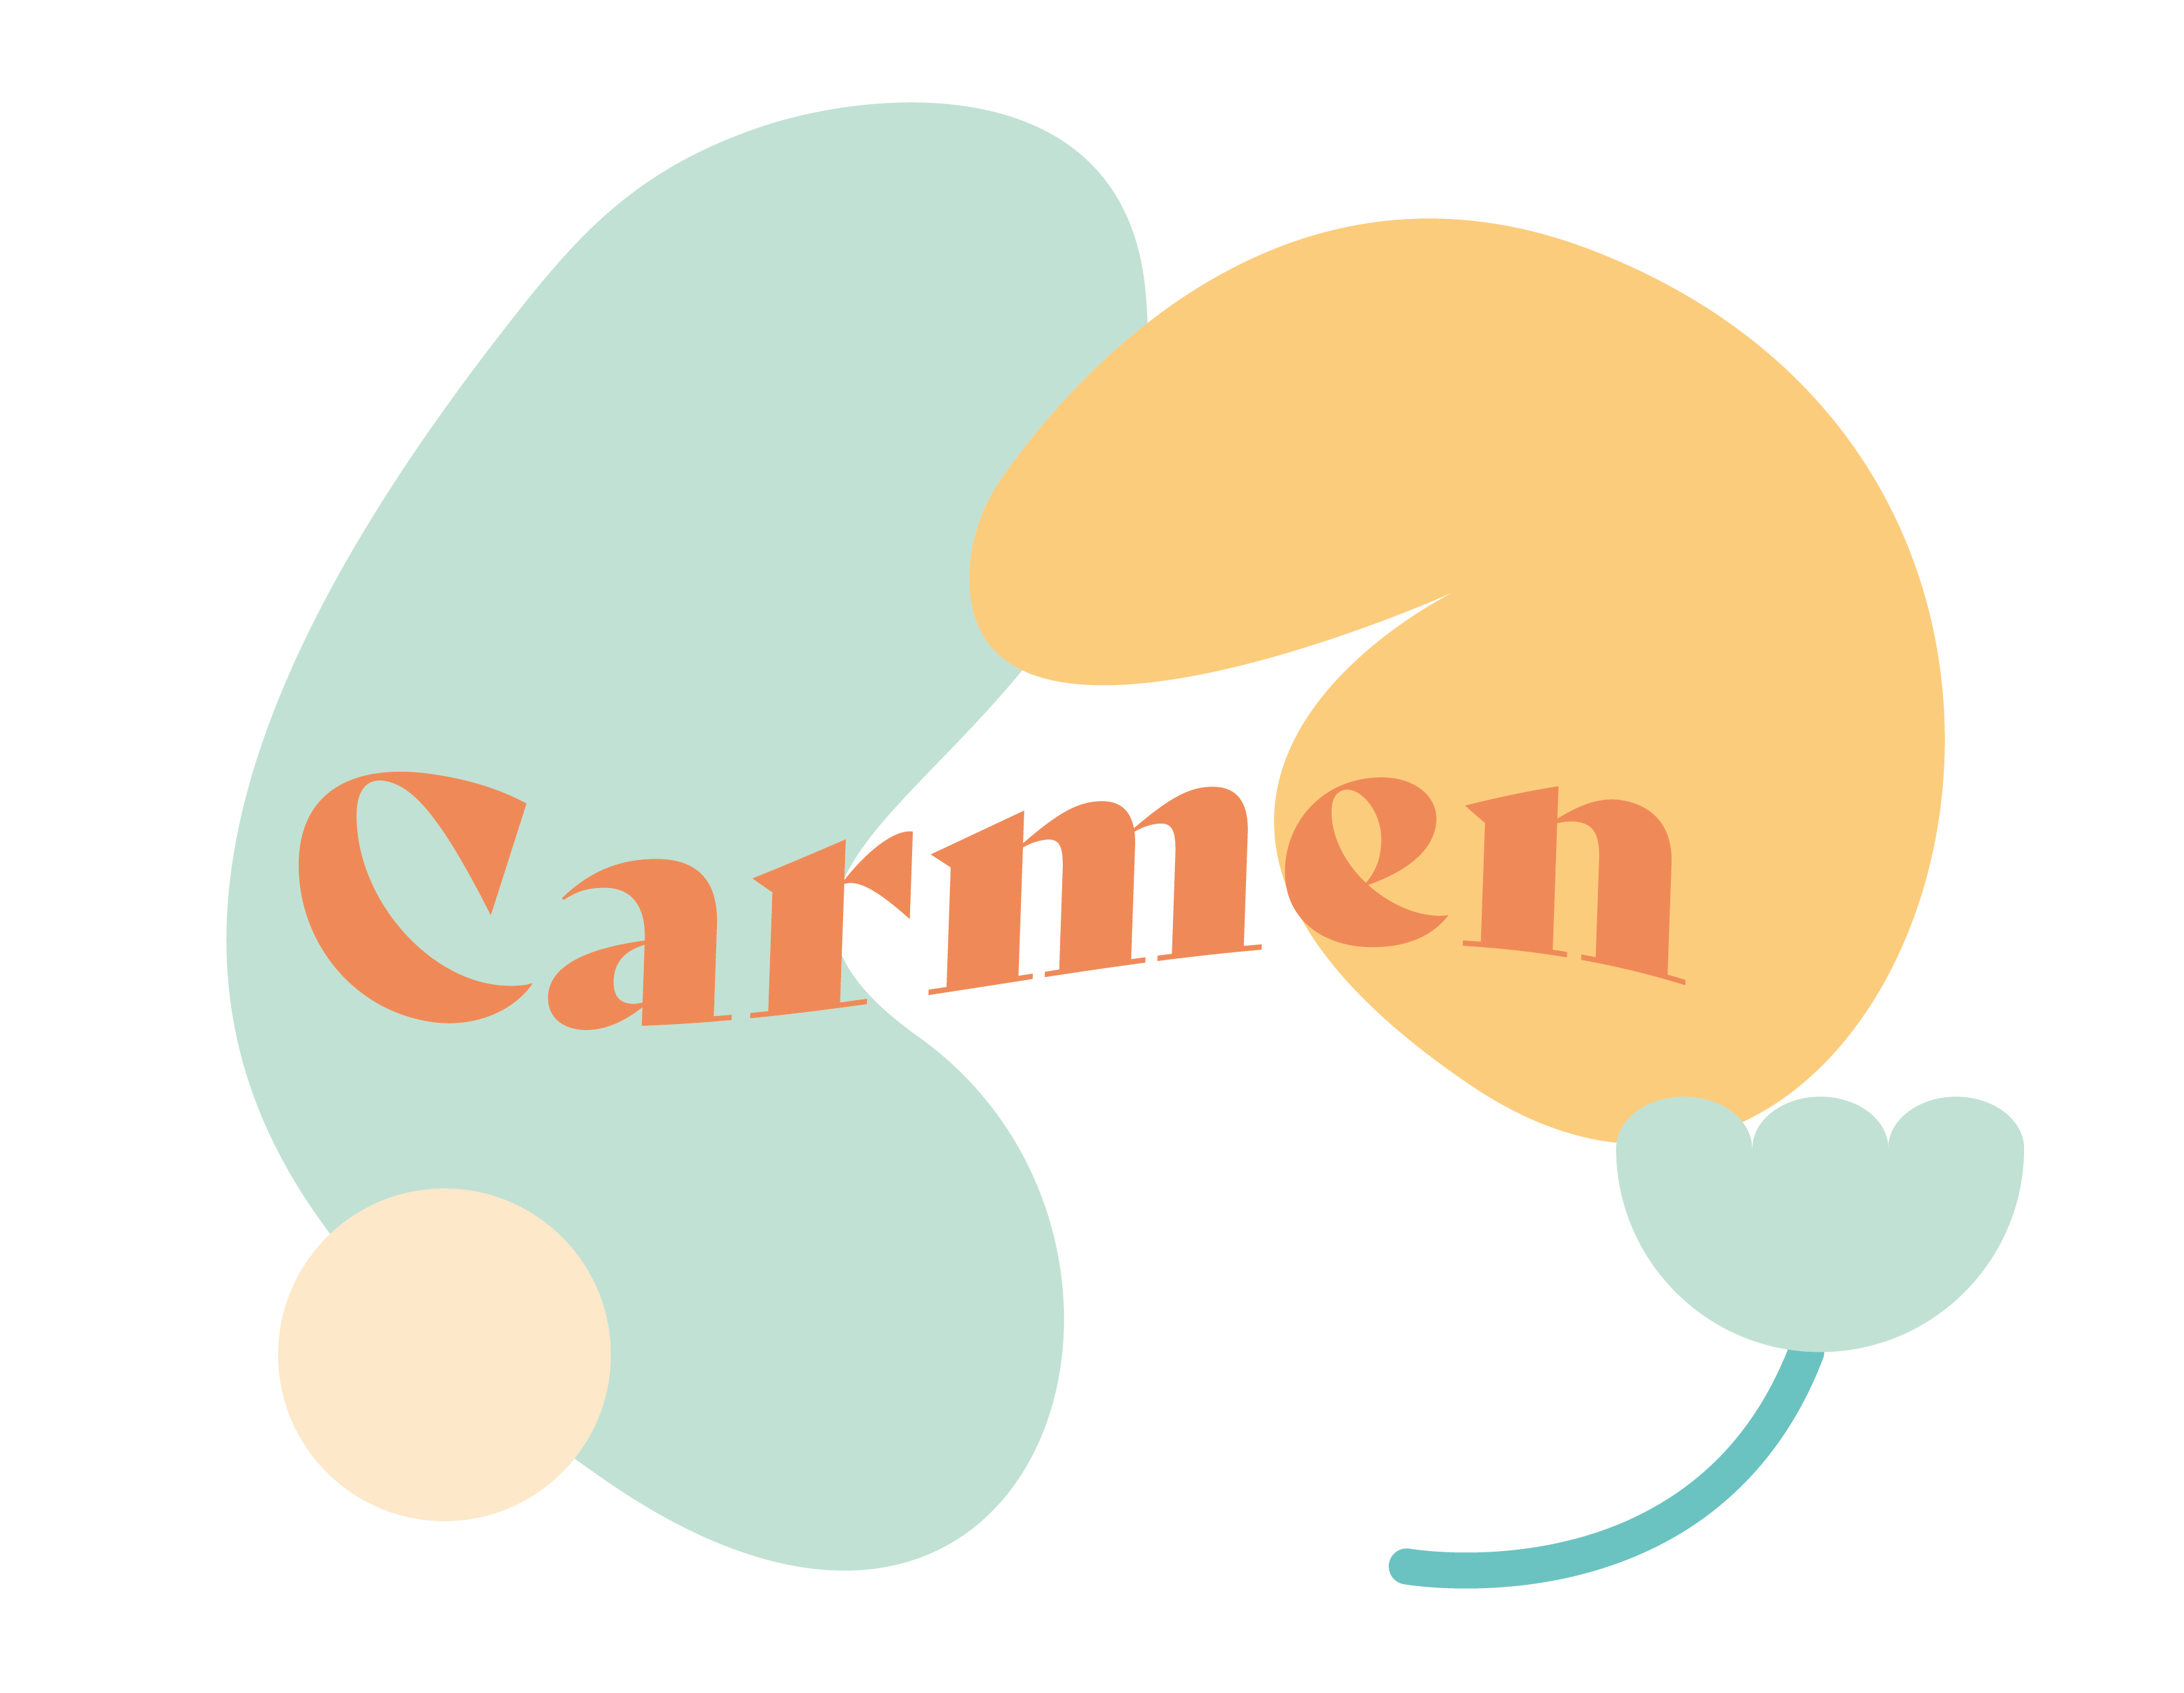 Carmen Lew